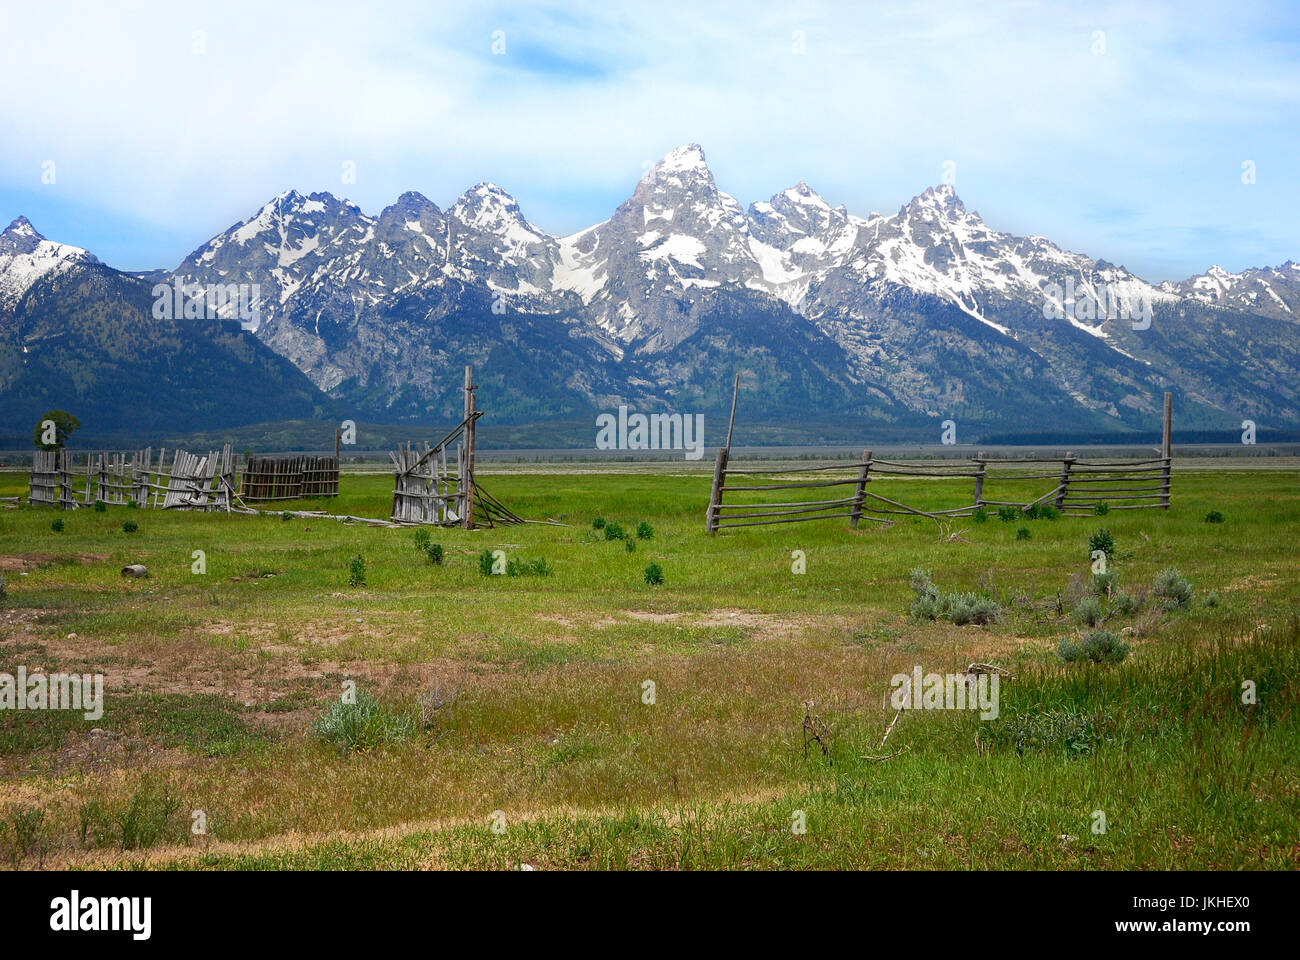 Corral at Mormon Row with the Grand Teton Range, Jackson Hole, Wyoming, USA Stock Photo